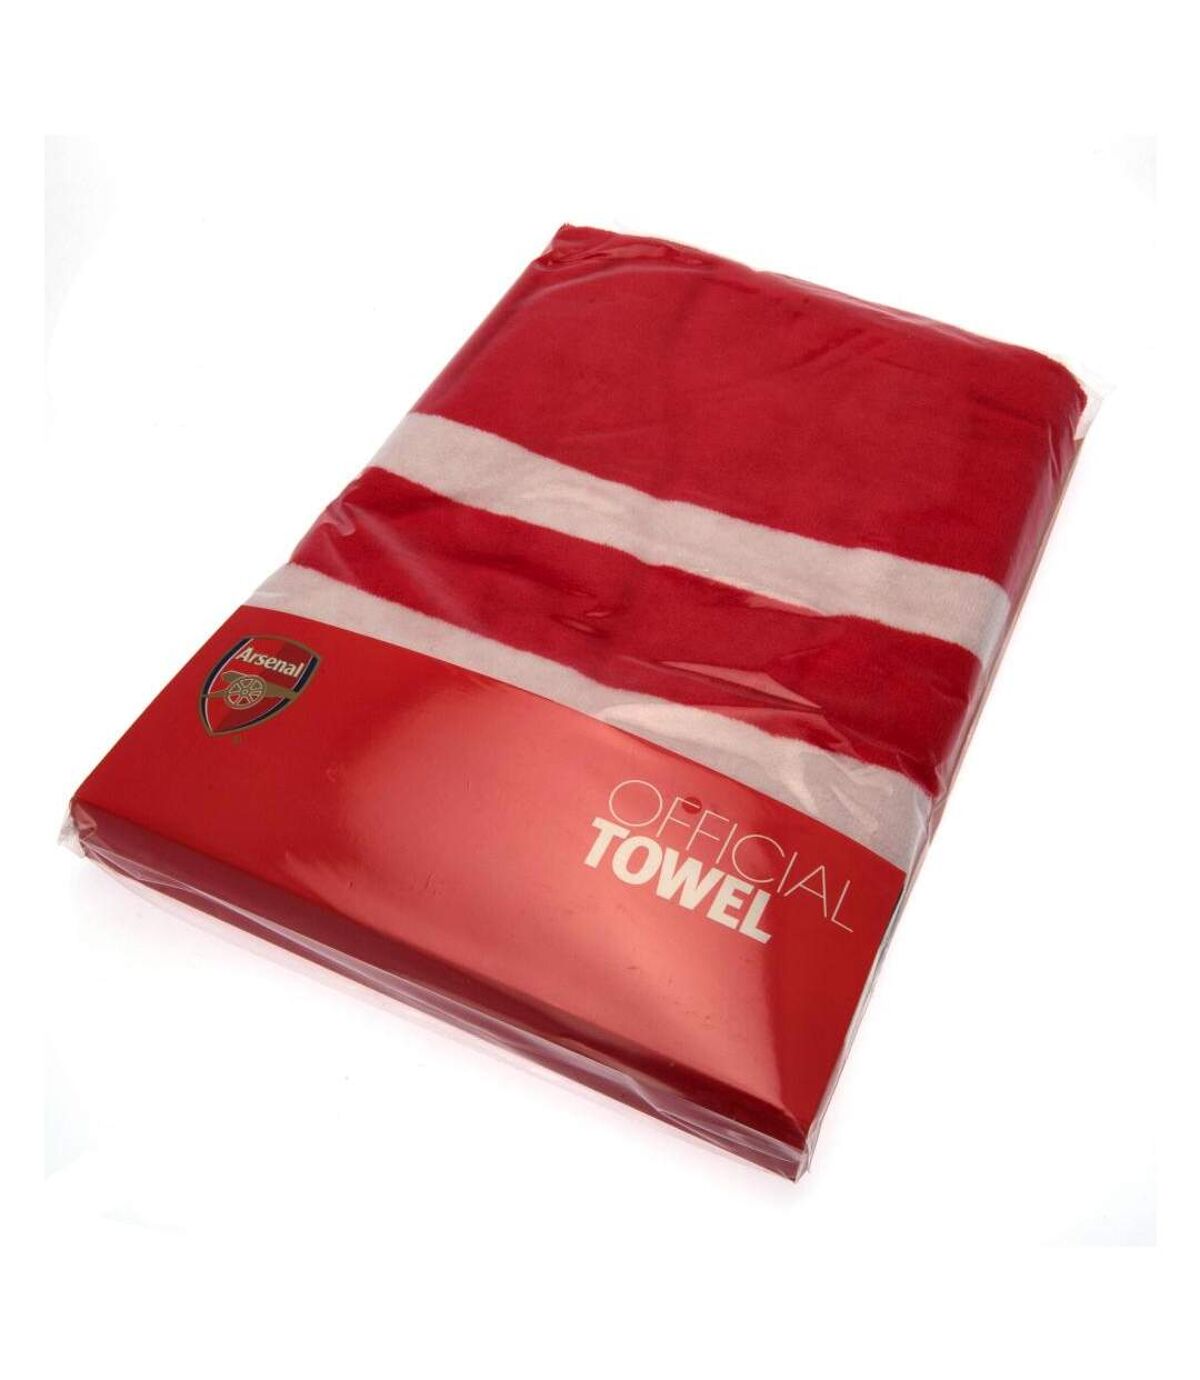 Arsenal FC - Serviette (Rouge) (Taille unique) - UTTA1029